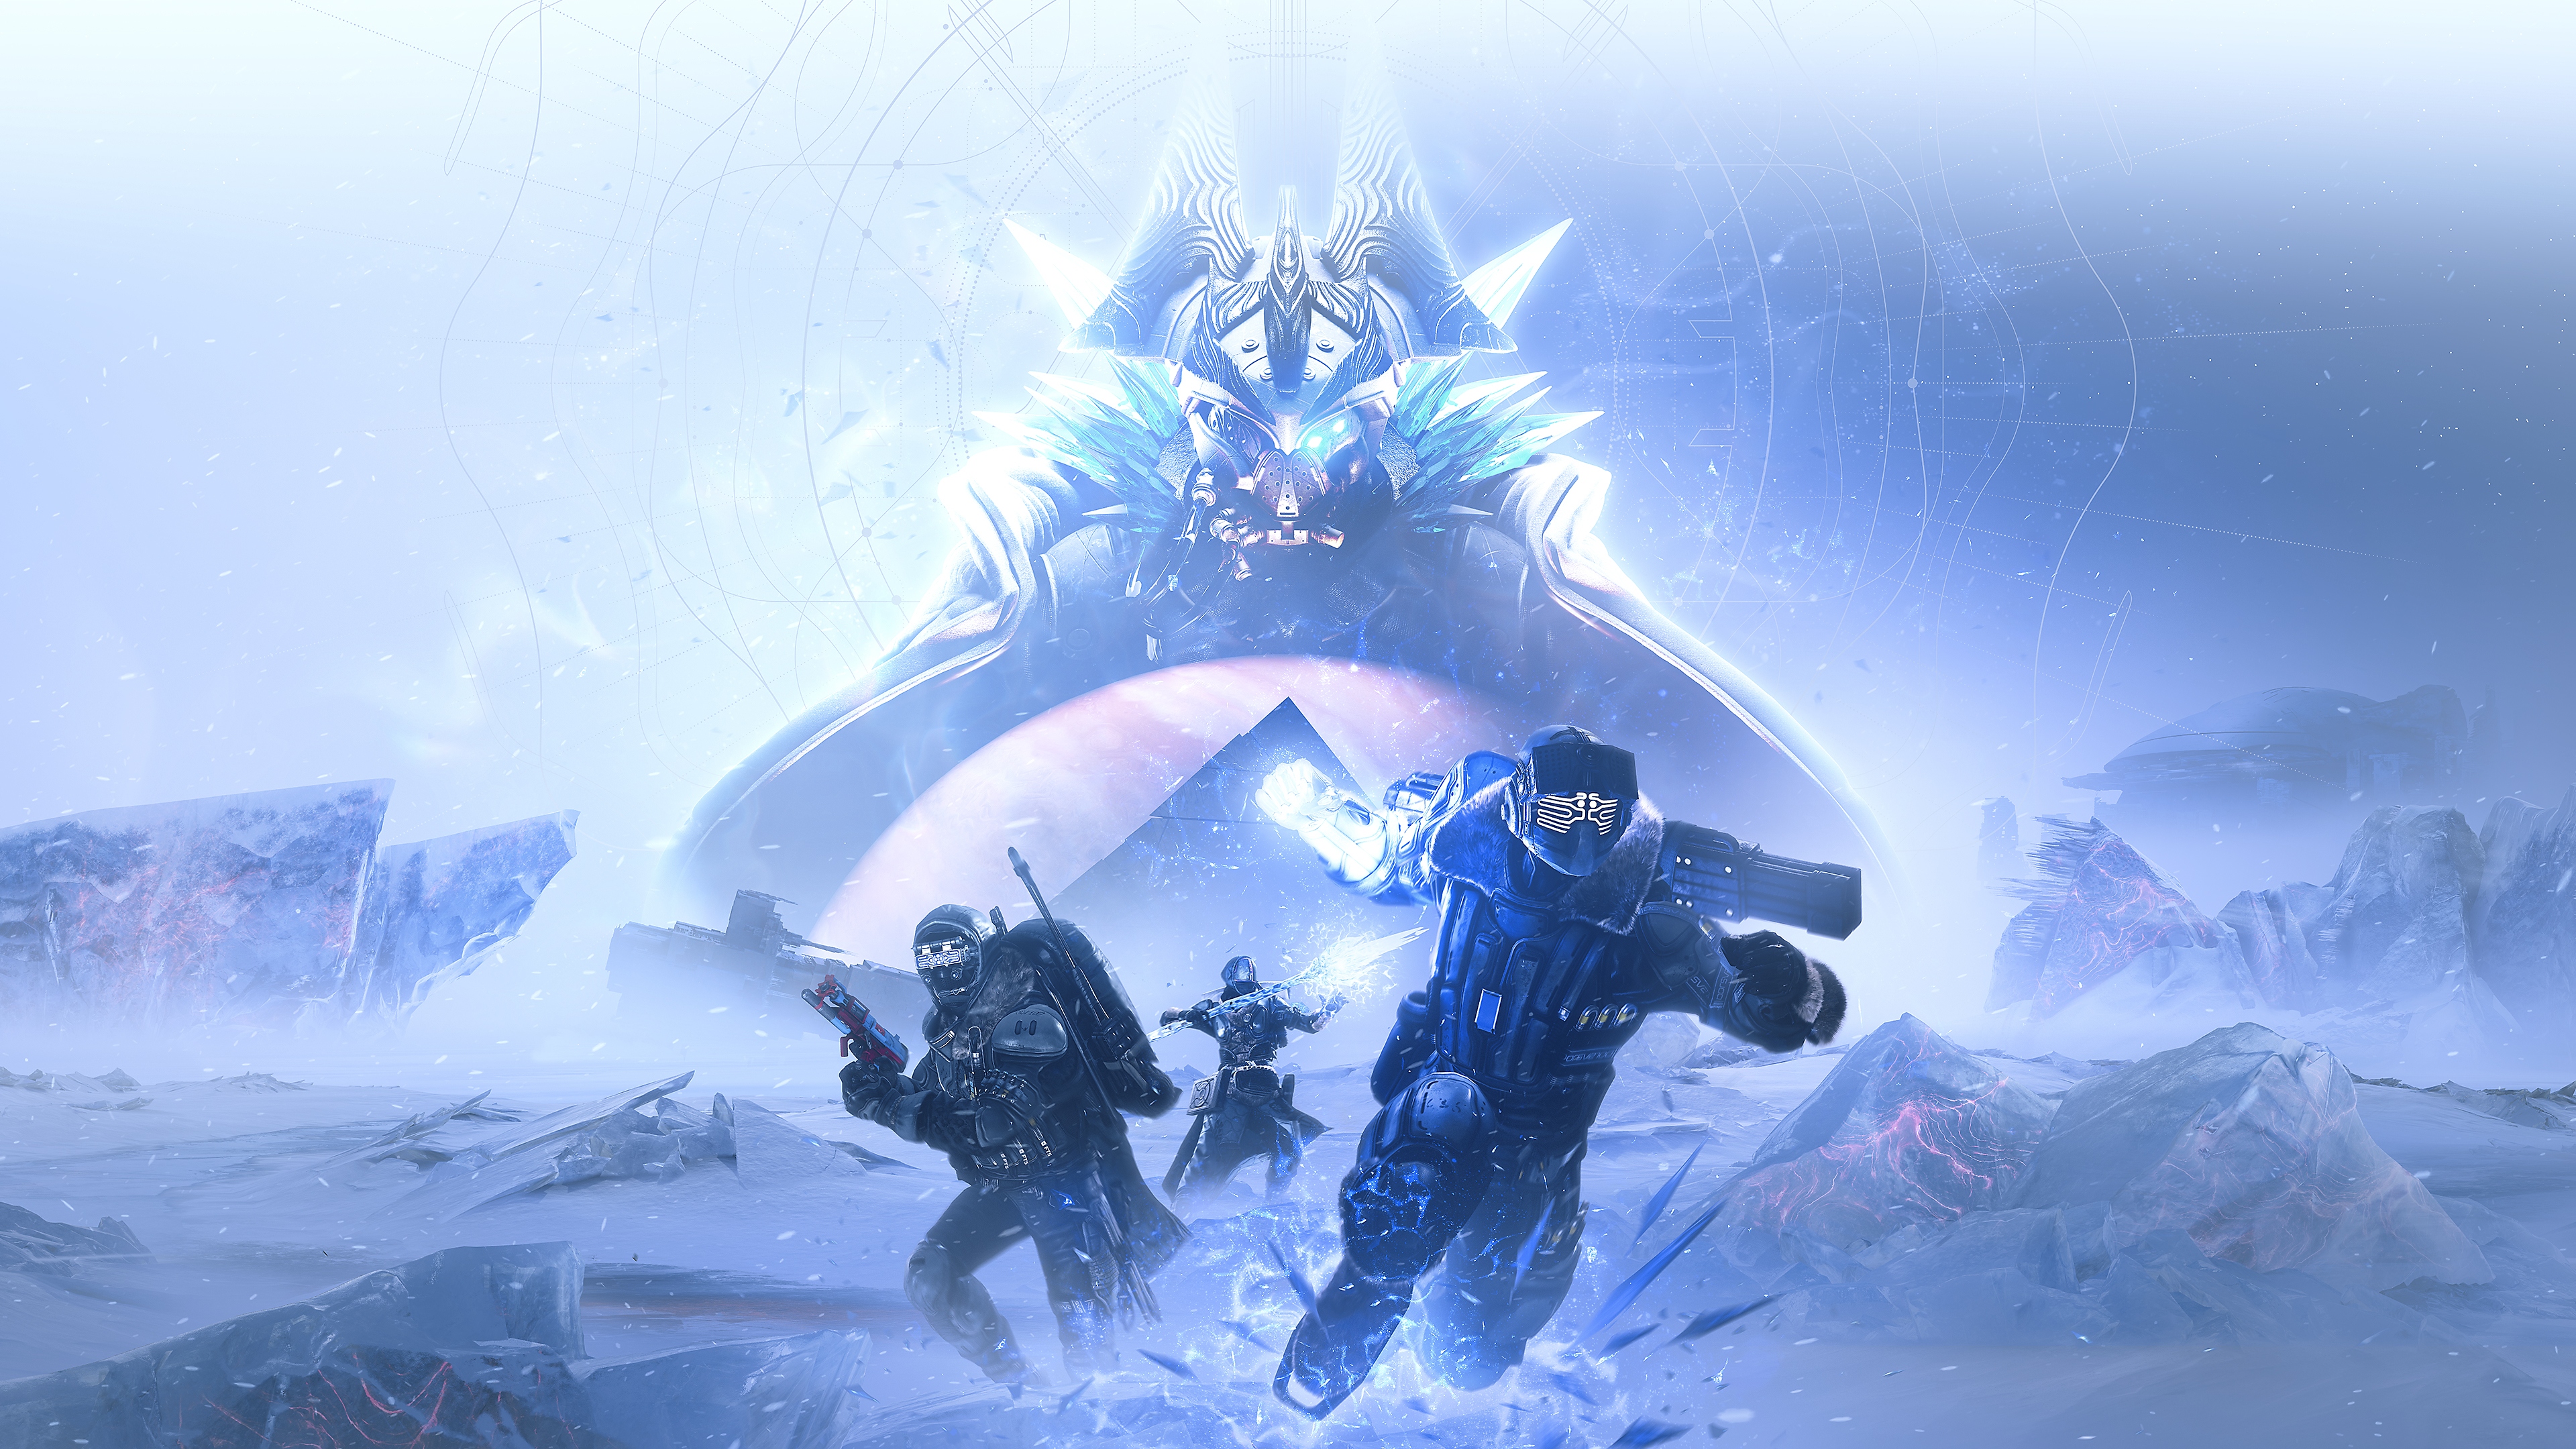 Destiny 2 : Au-delà de la Lumière - Image d'Eramis, la Kall des Ténèbres déchue